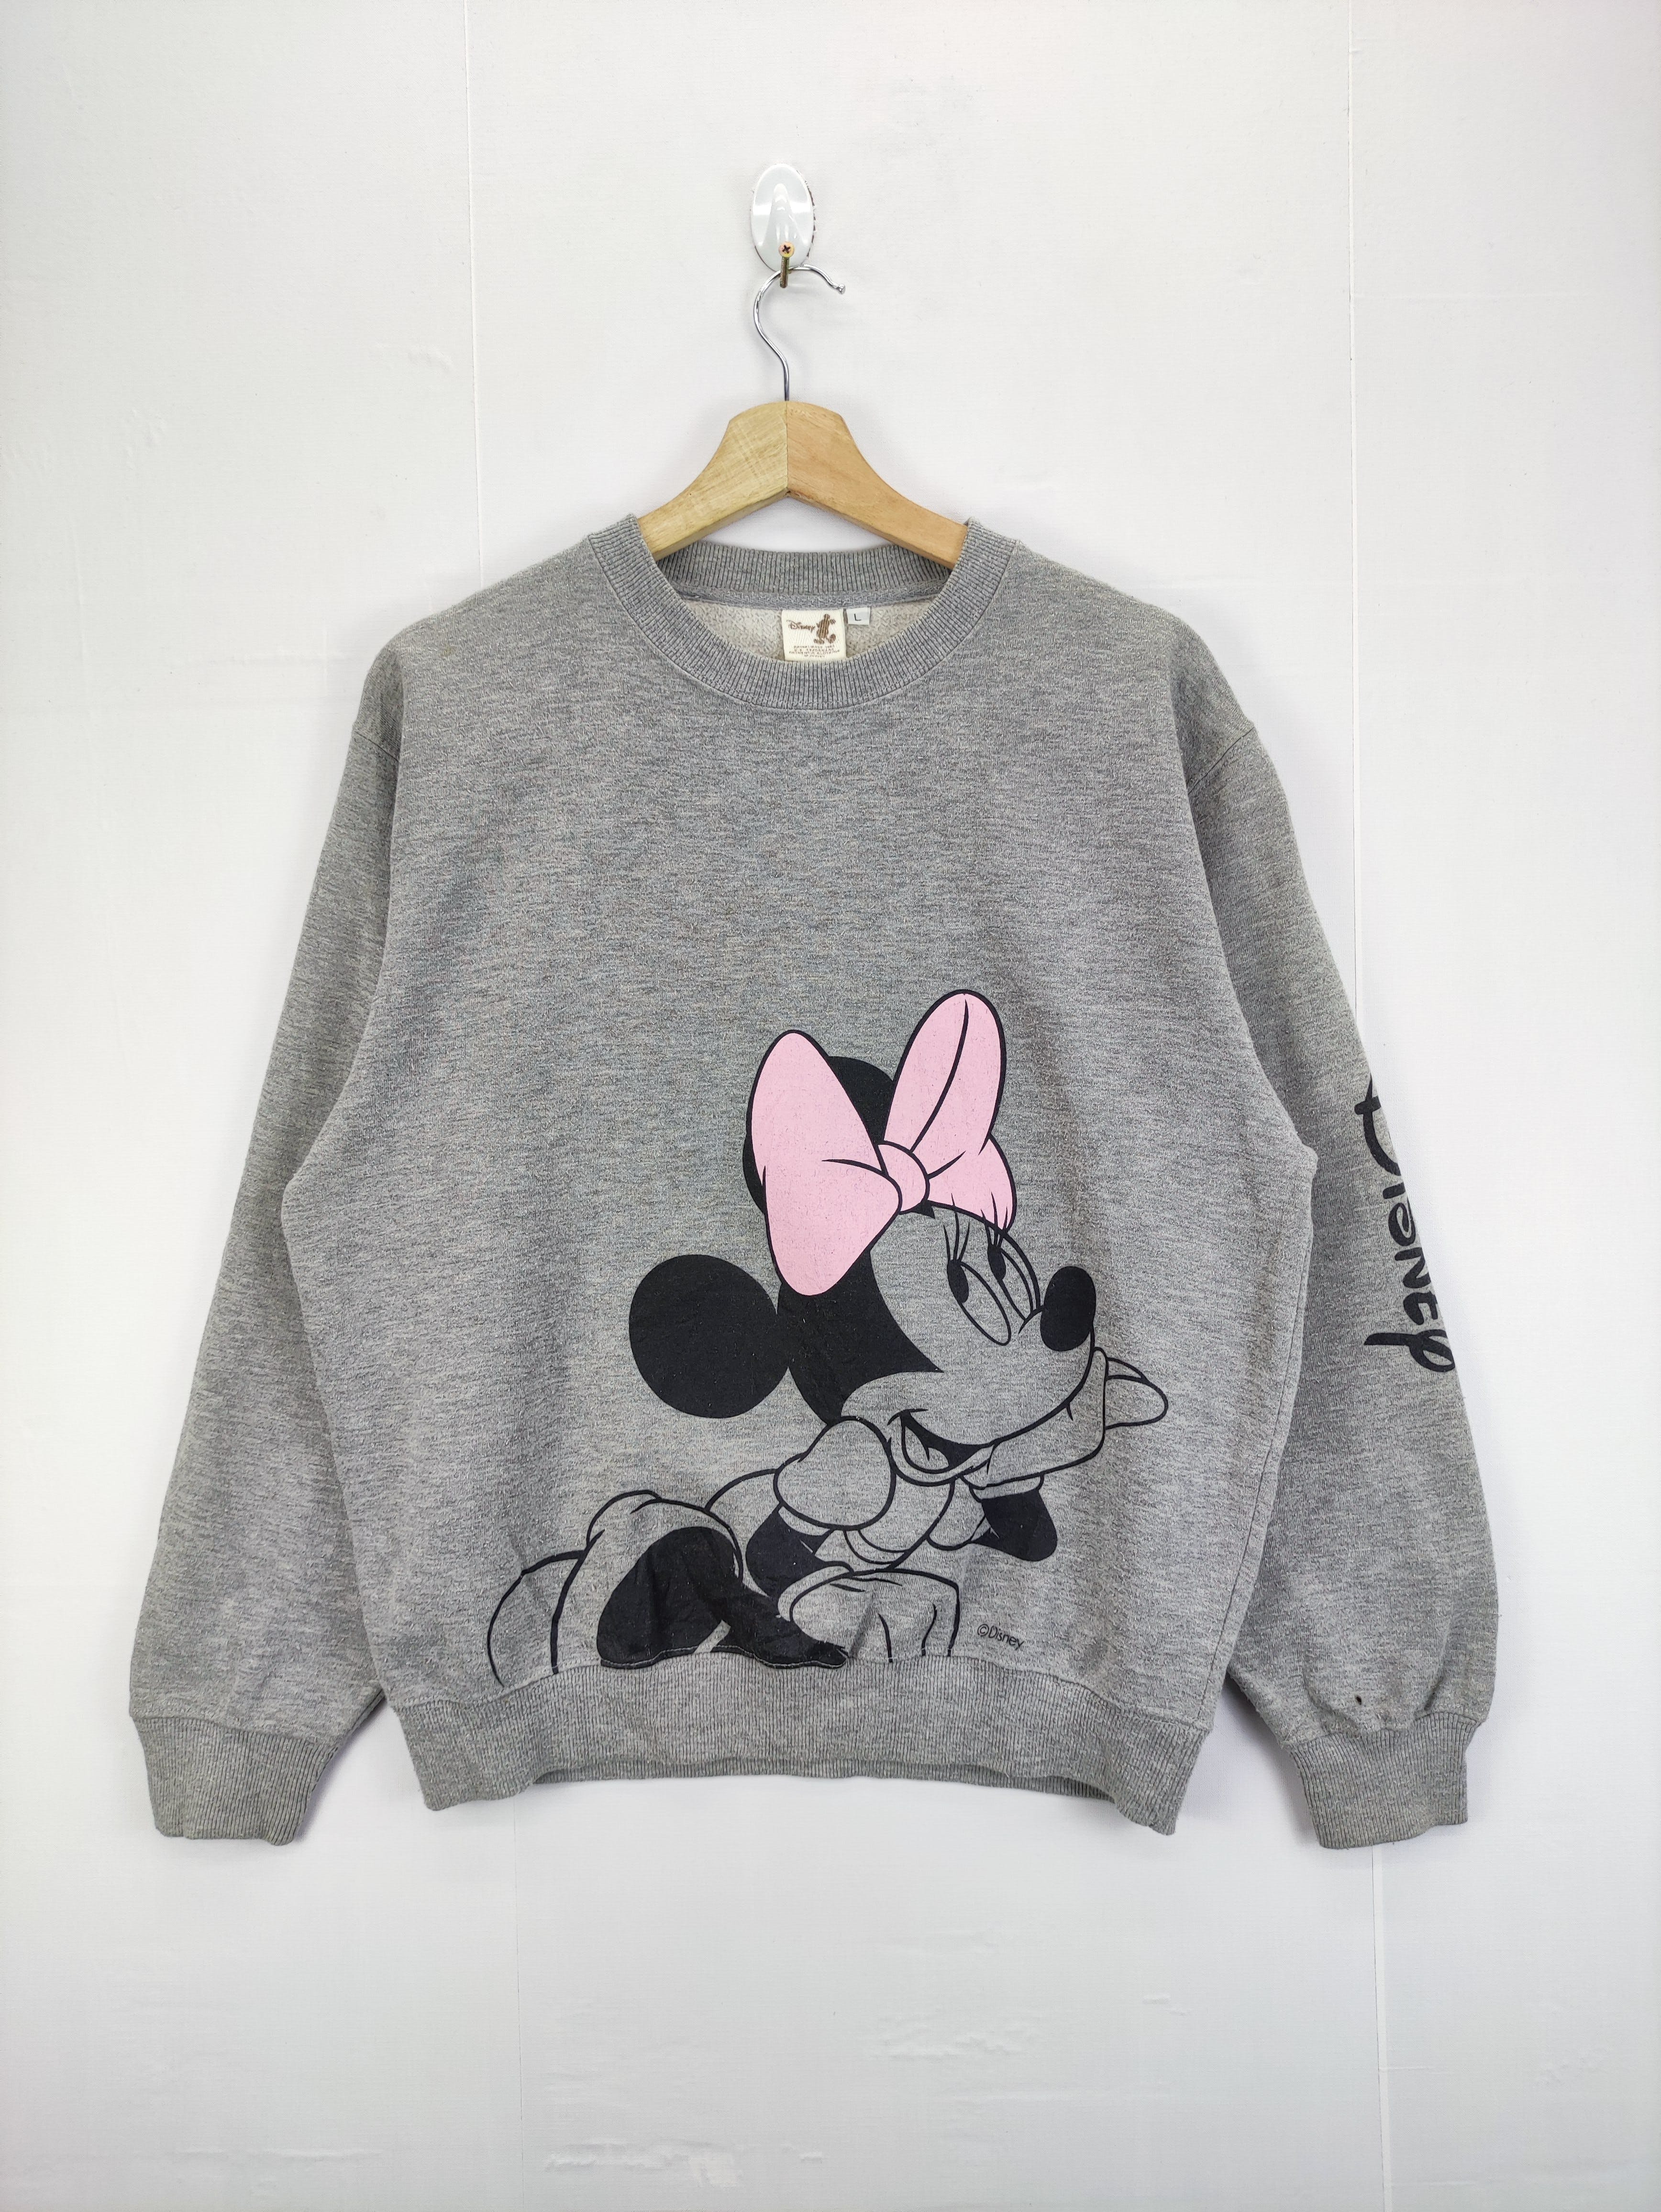 Vintage Minnie Mouse Disney Sweatshirt Big Printed - 1